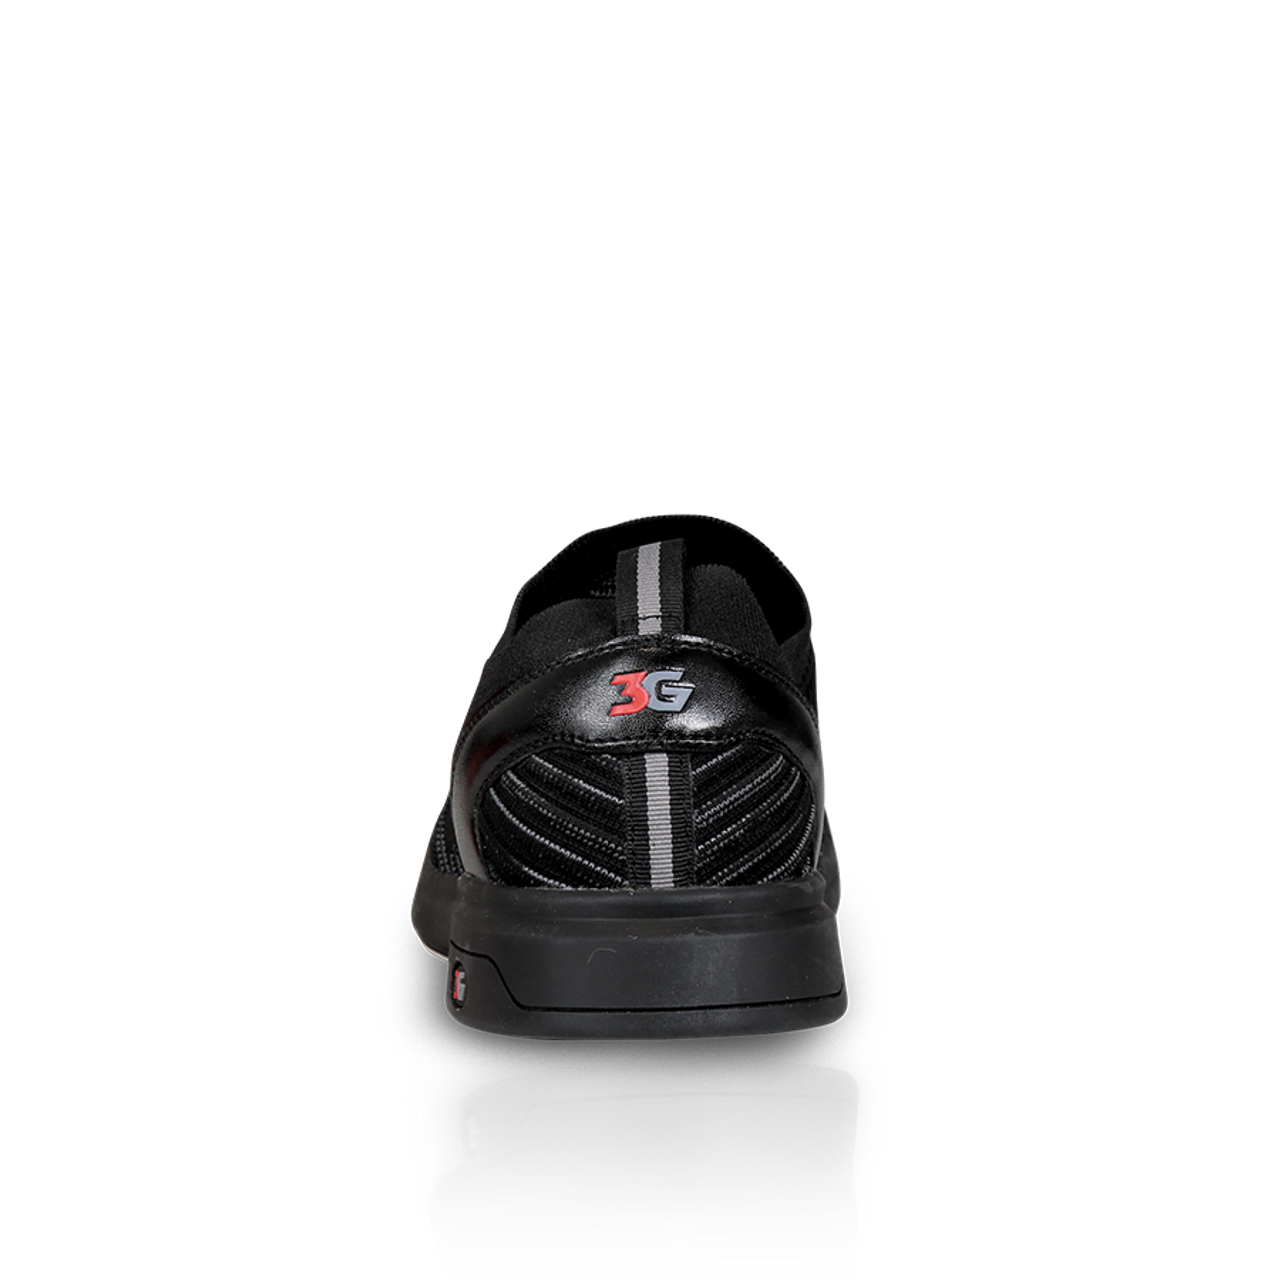 3G Ascent Men's Bowling Shoes Black